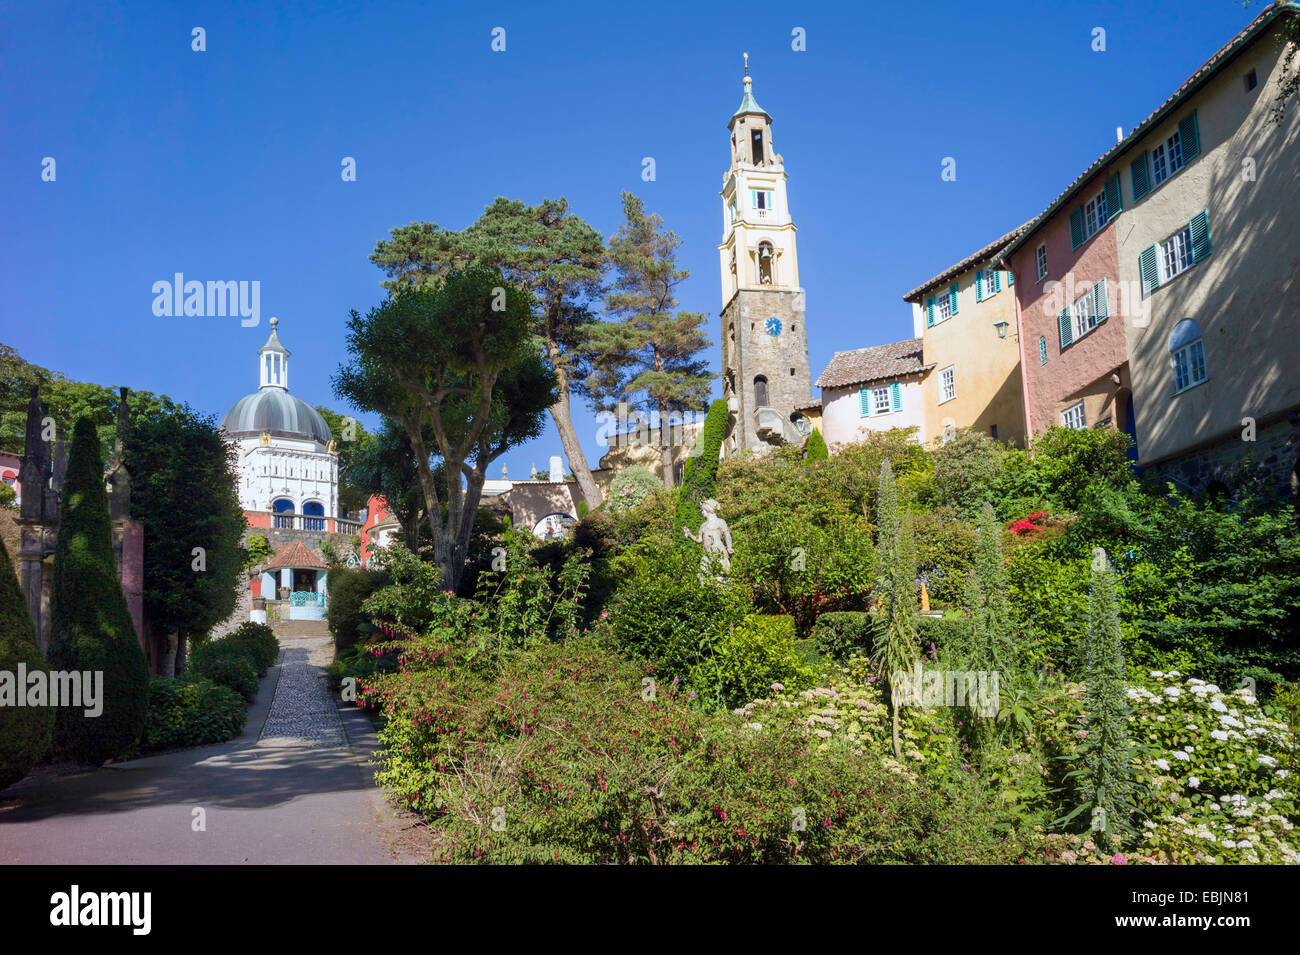 Wege-Thread durch Sträucher, Blumen und Bäume in Batterie quadratische Portmeirion Dorf überragt von italienischen Stil Gebäuden Stockfoto